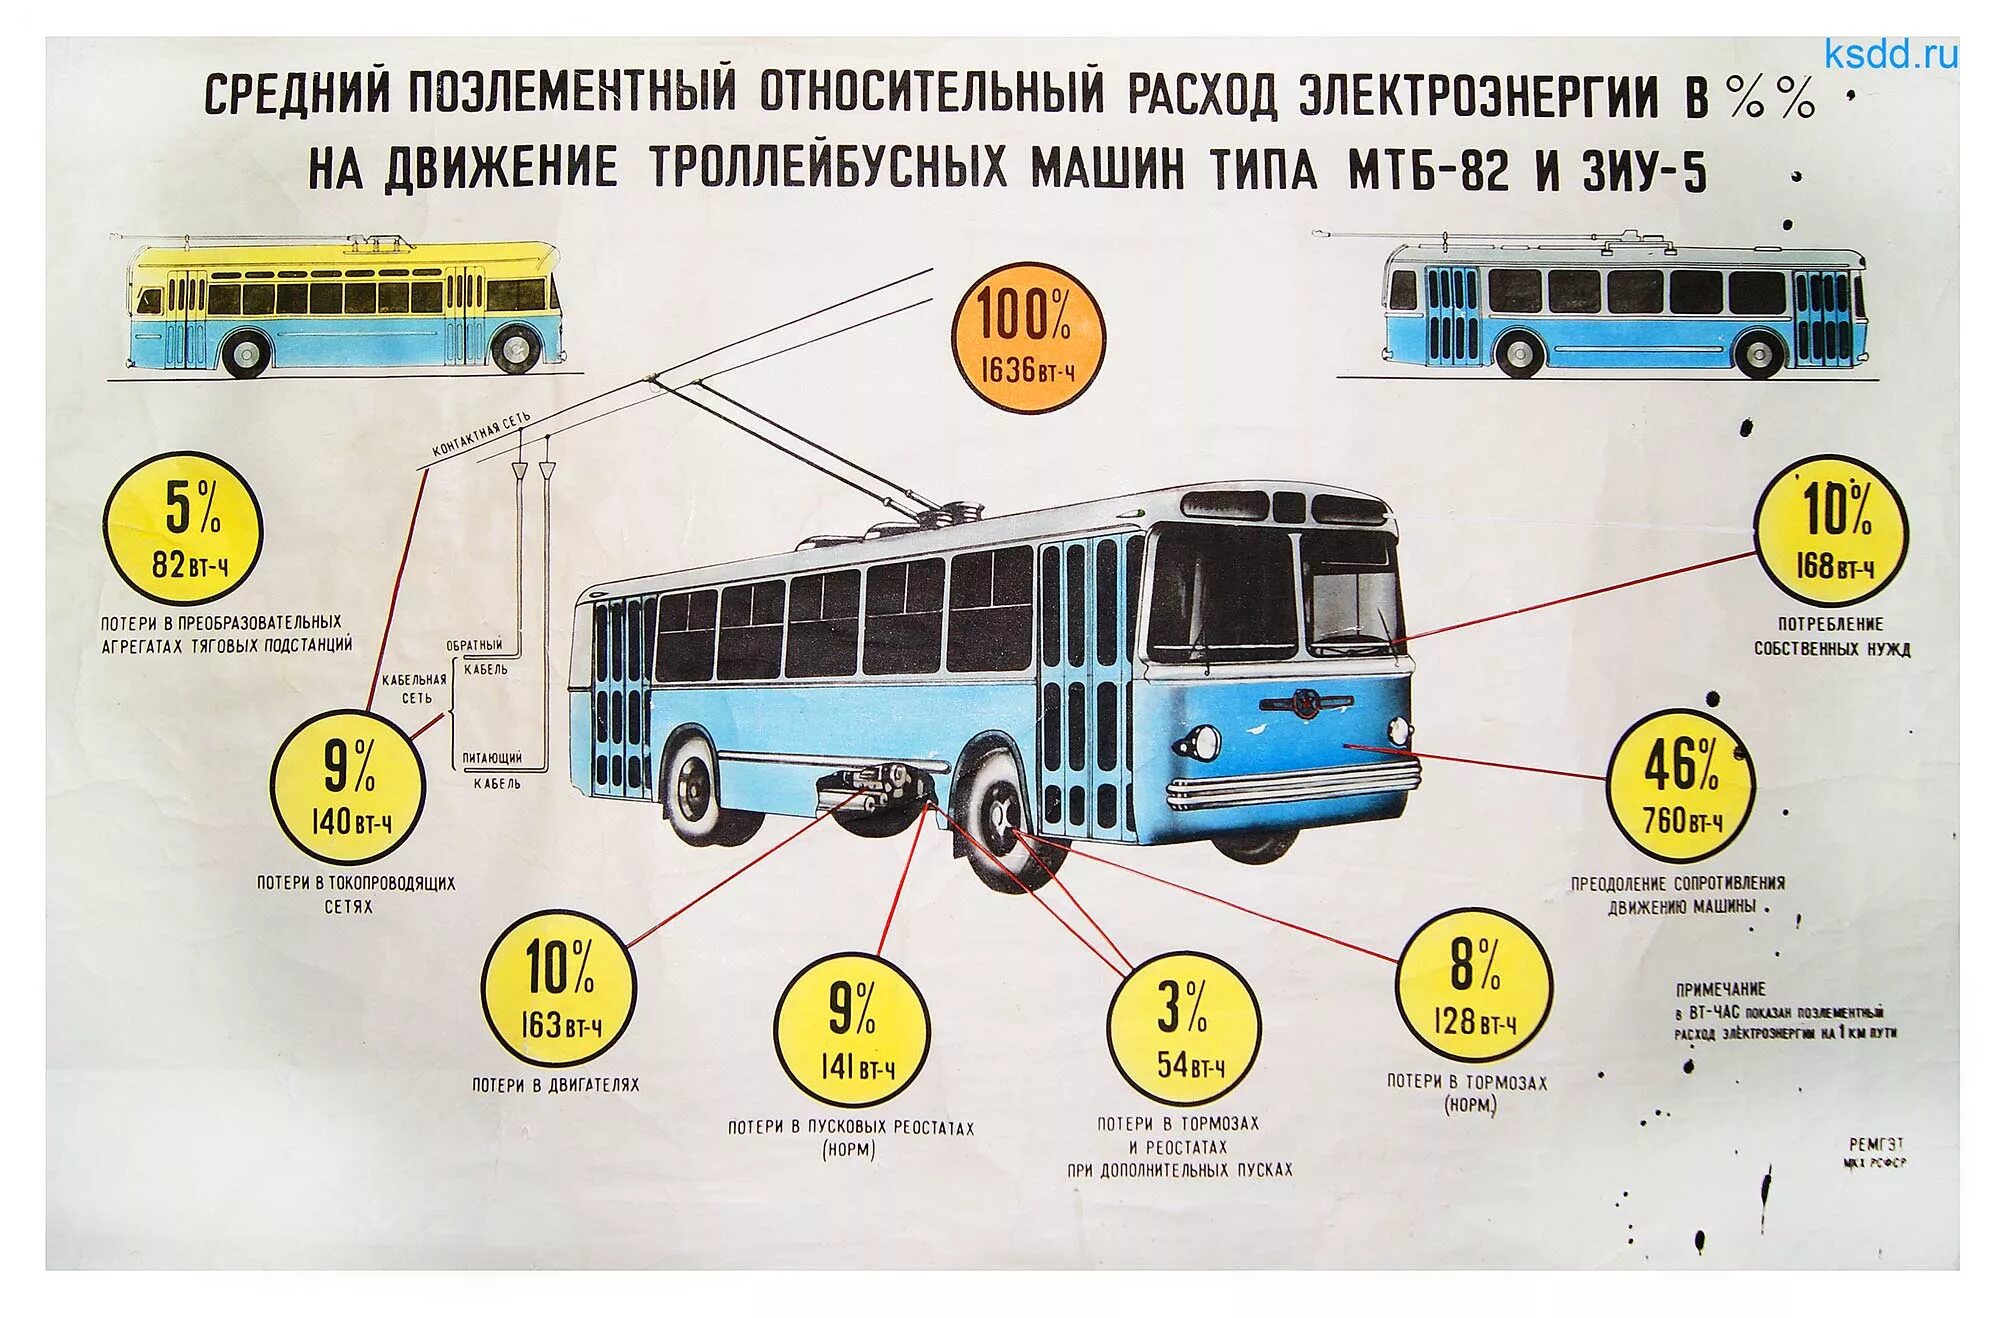 Троллейбус что делает. Троллейбус МТБ-82 чертеж. Конструкция троллейбуса. Основные части троллейбуса. Строение троллейбуса.